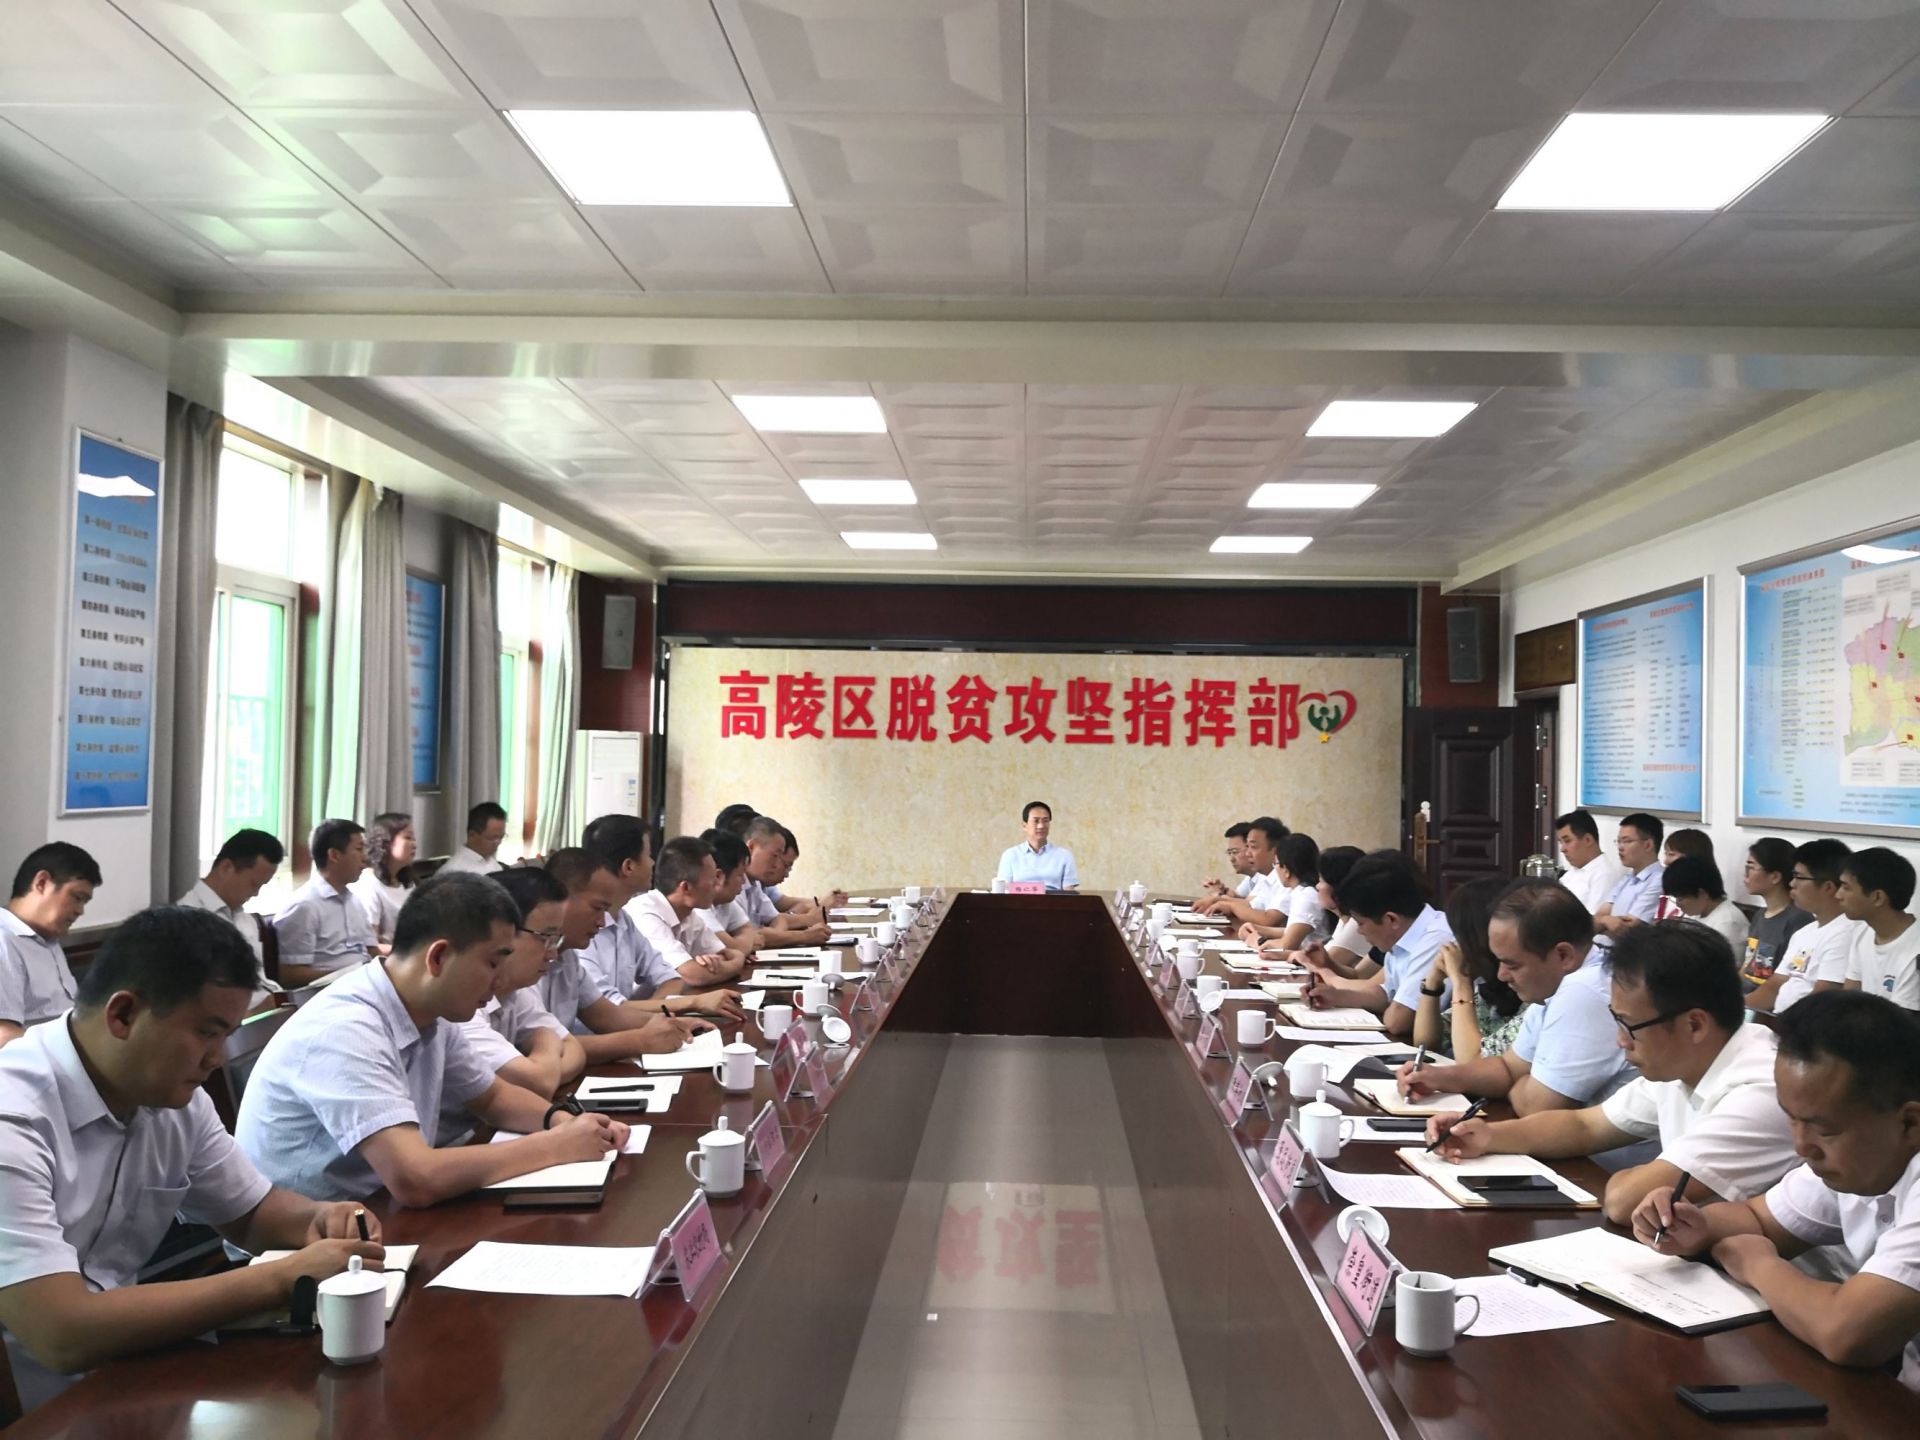 比一提升"工作部署视频会后,西安高陵区委书记杨仁华立即组织召开会议